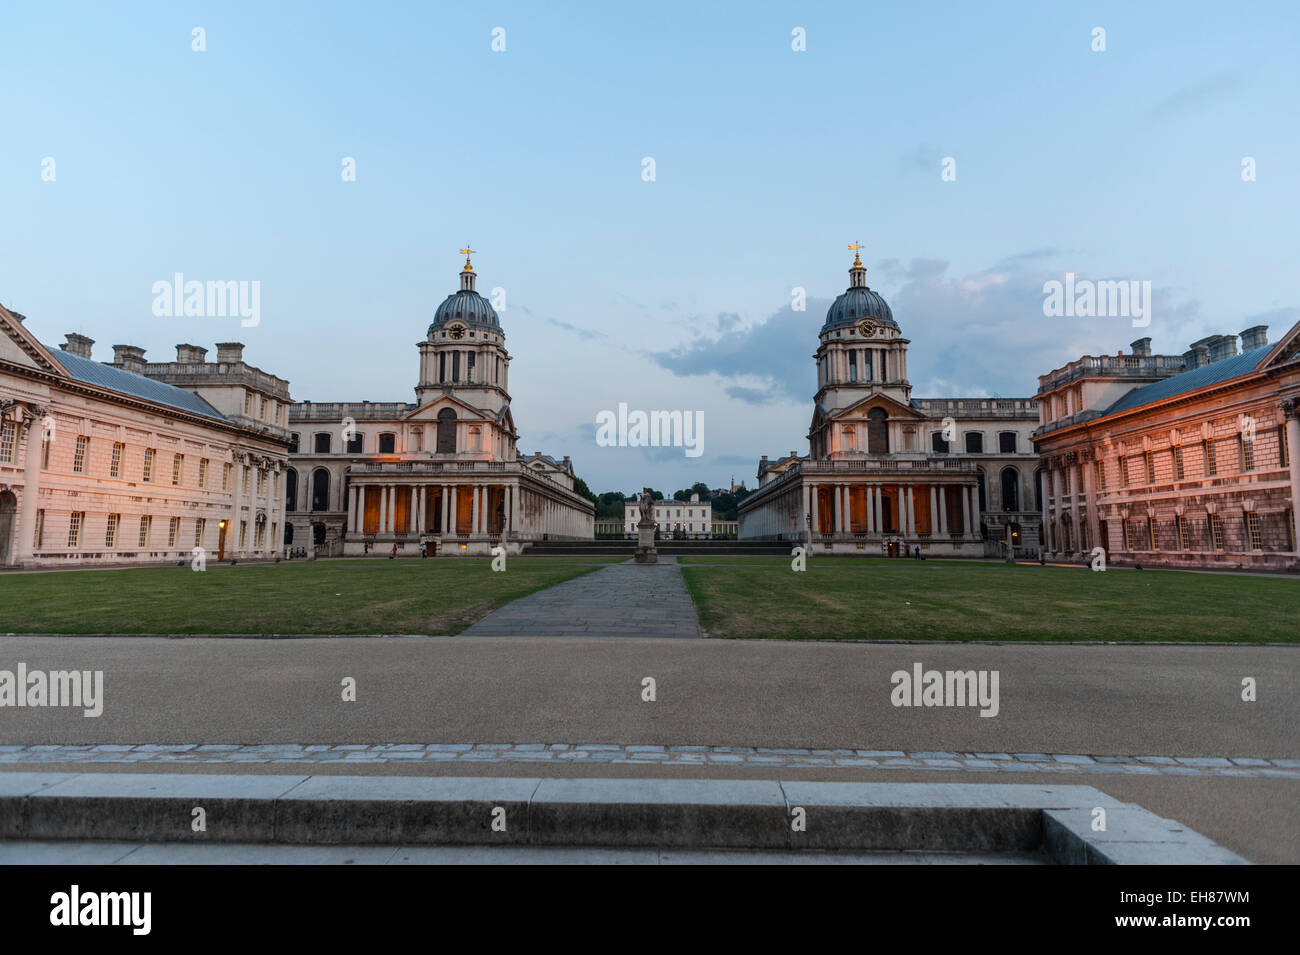 L'università navale reale a Greenwich al tramonto con la casa delle regine e l'osservatorio reale dietro. Foto Stock